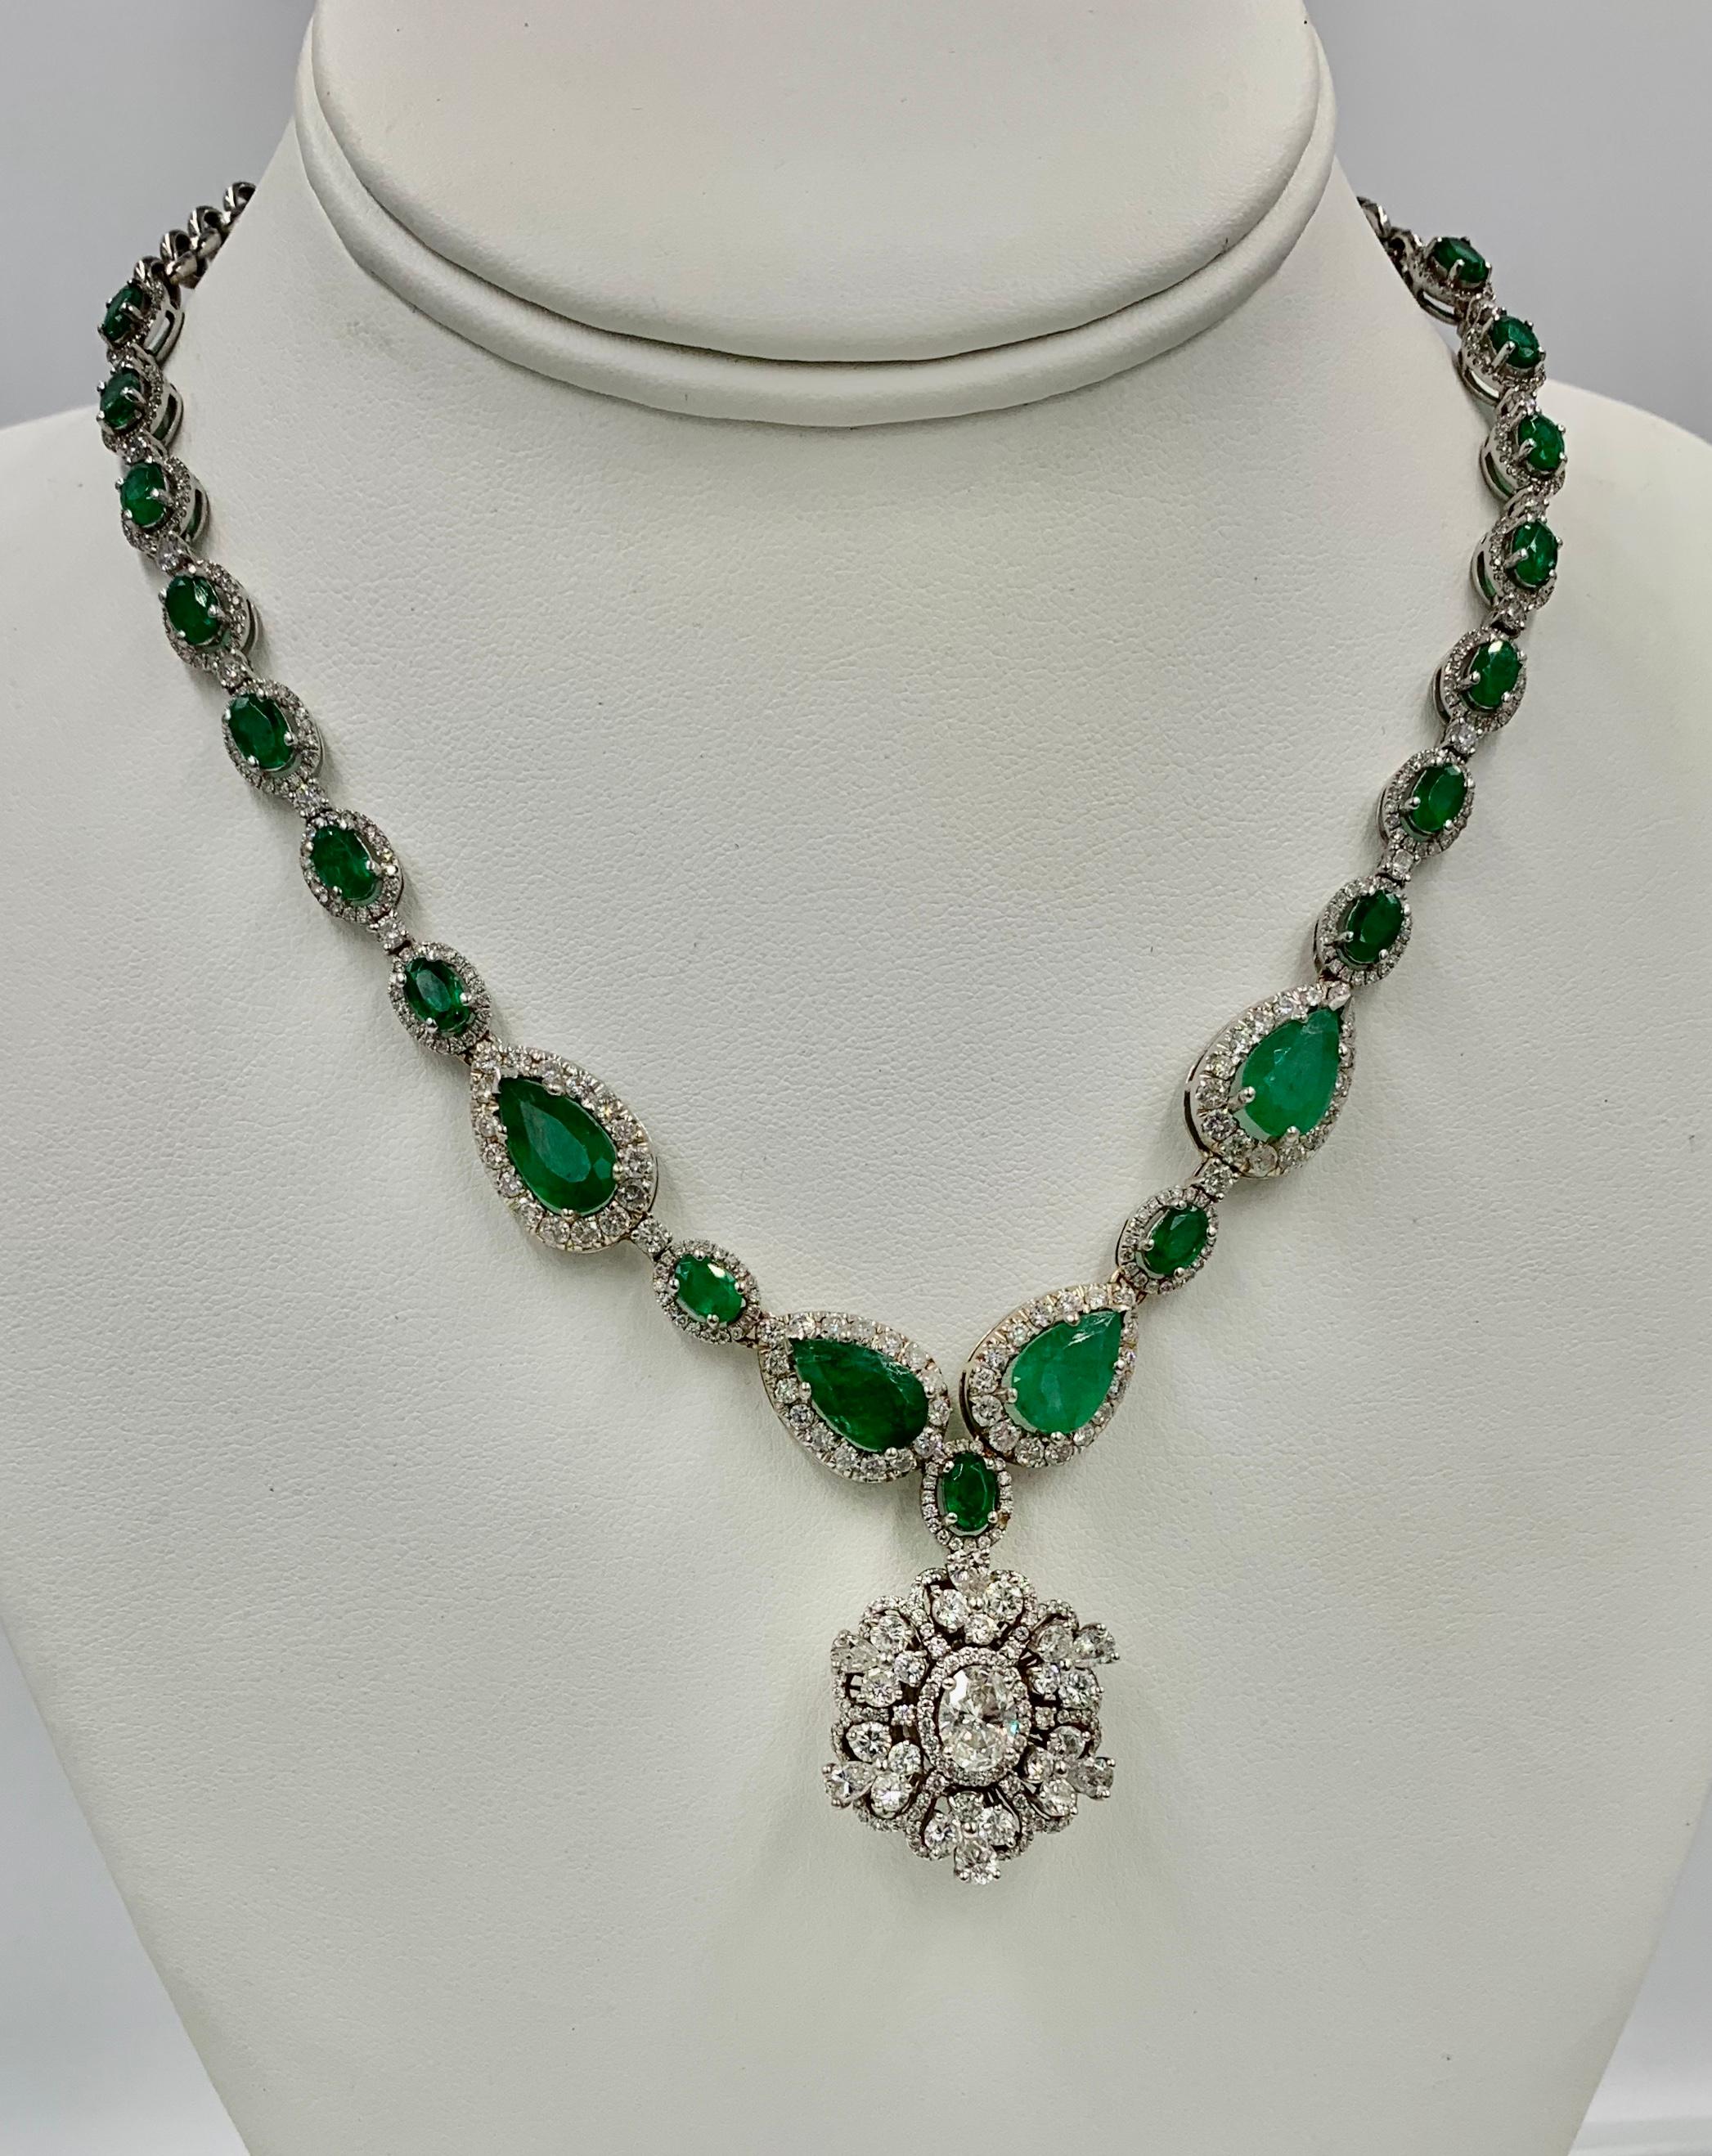 93 carat emerald necklace